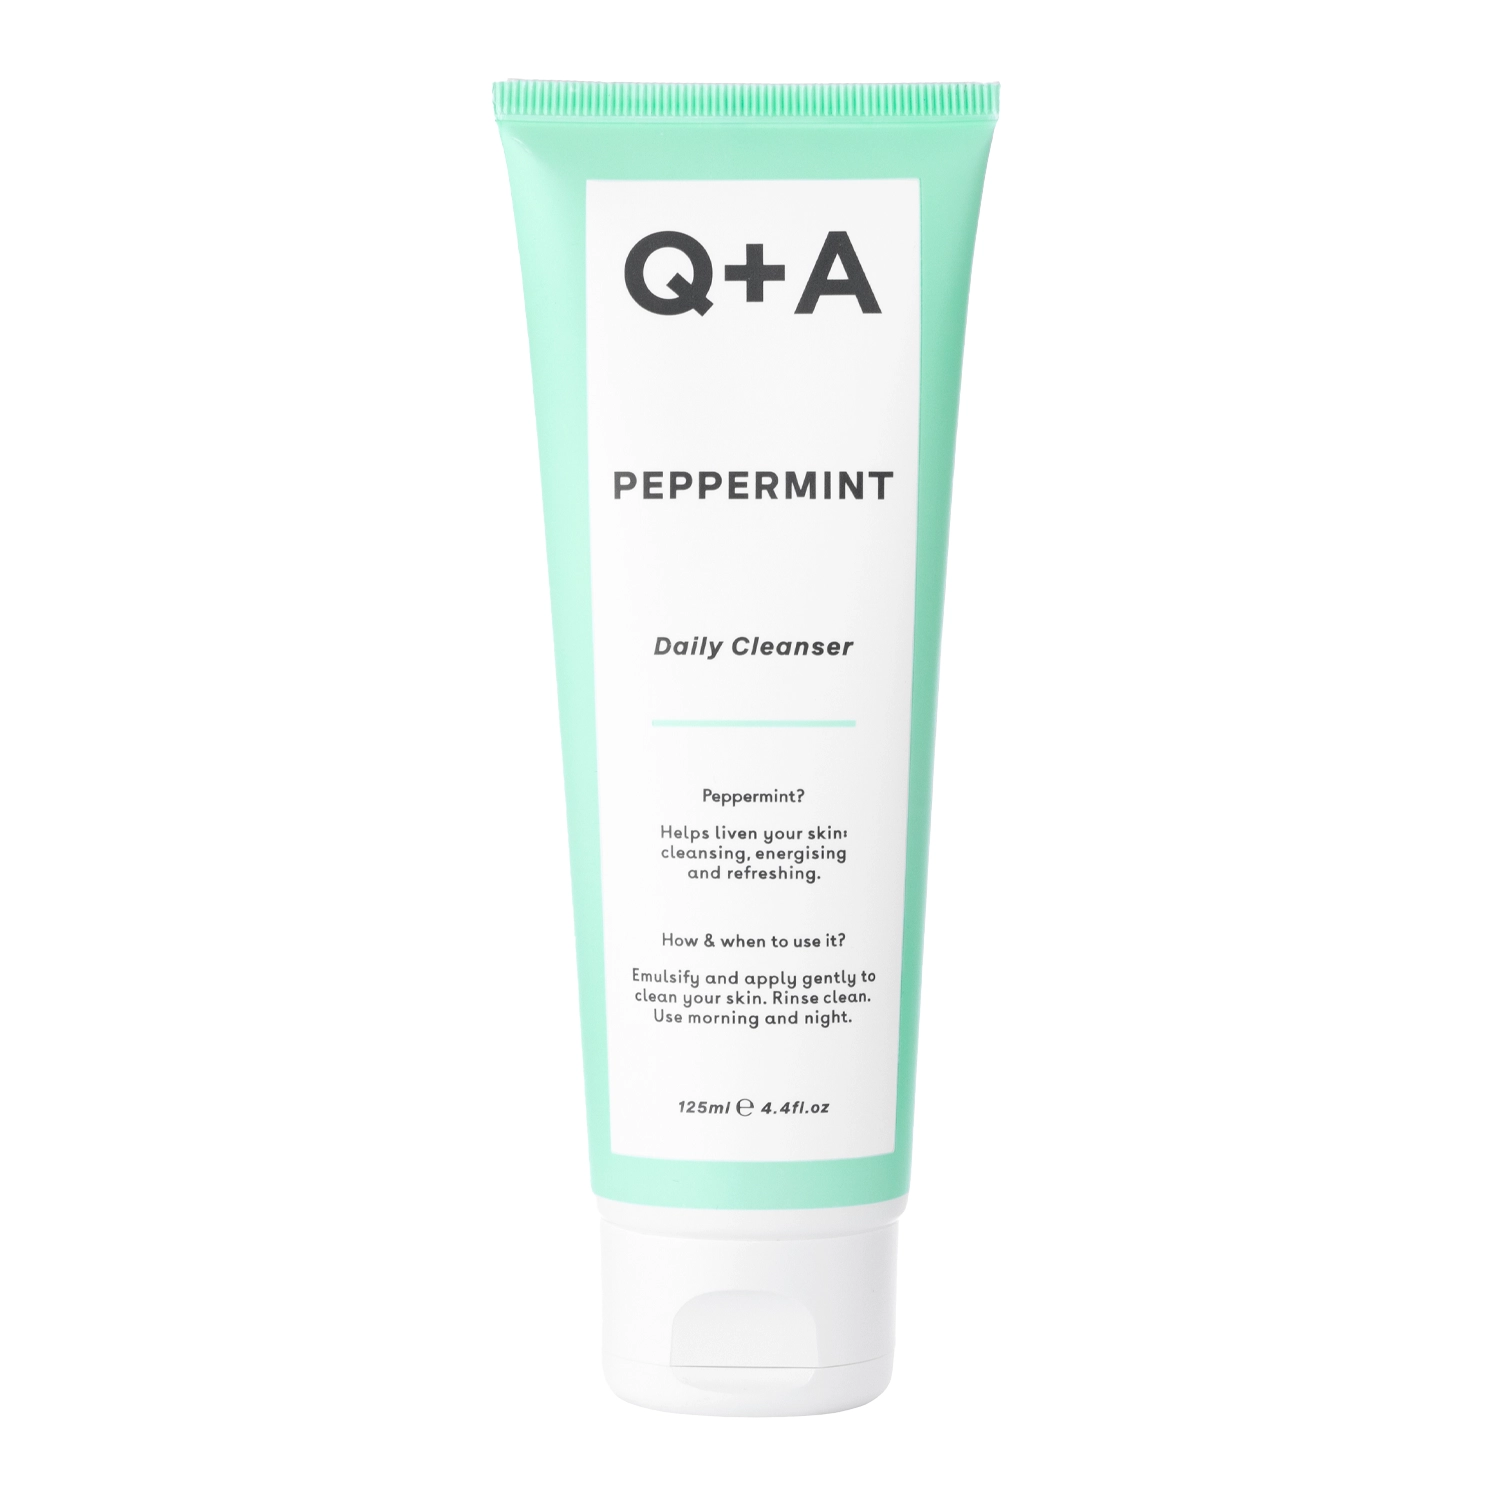 Q+A - Peppermint - Daily Cleanser - Nomierinošs un attīrošs sejas mazgāšanas gēls ar piparmētru - 125ml